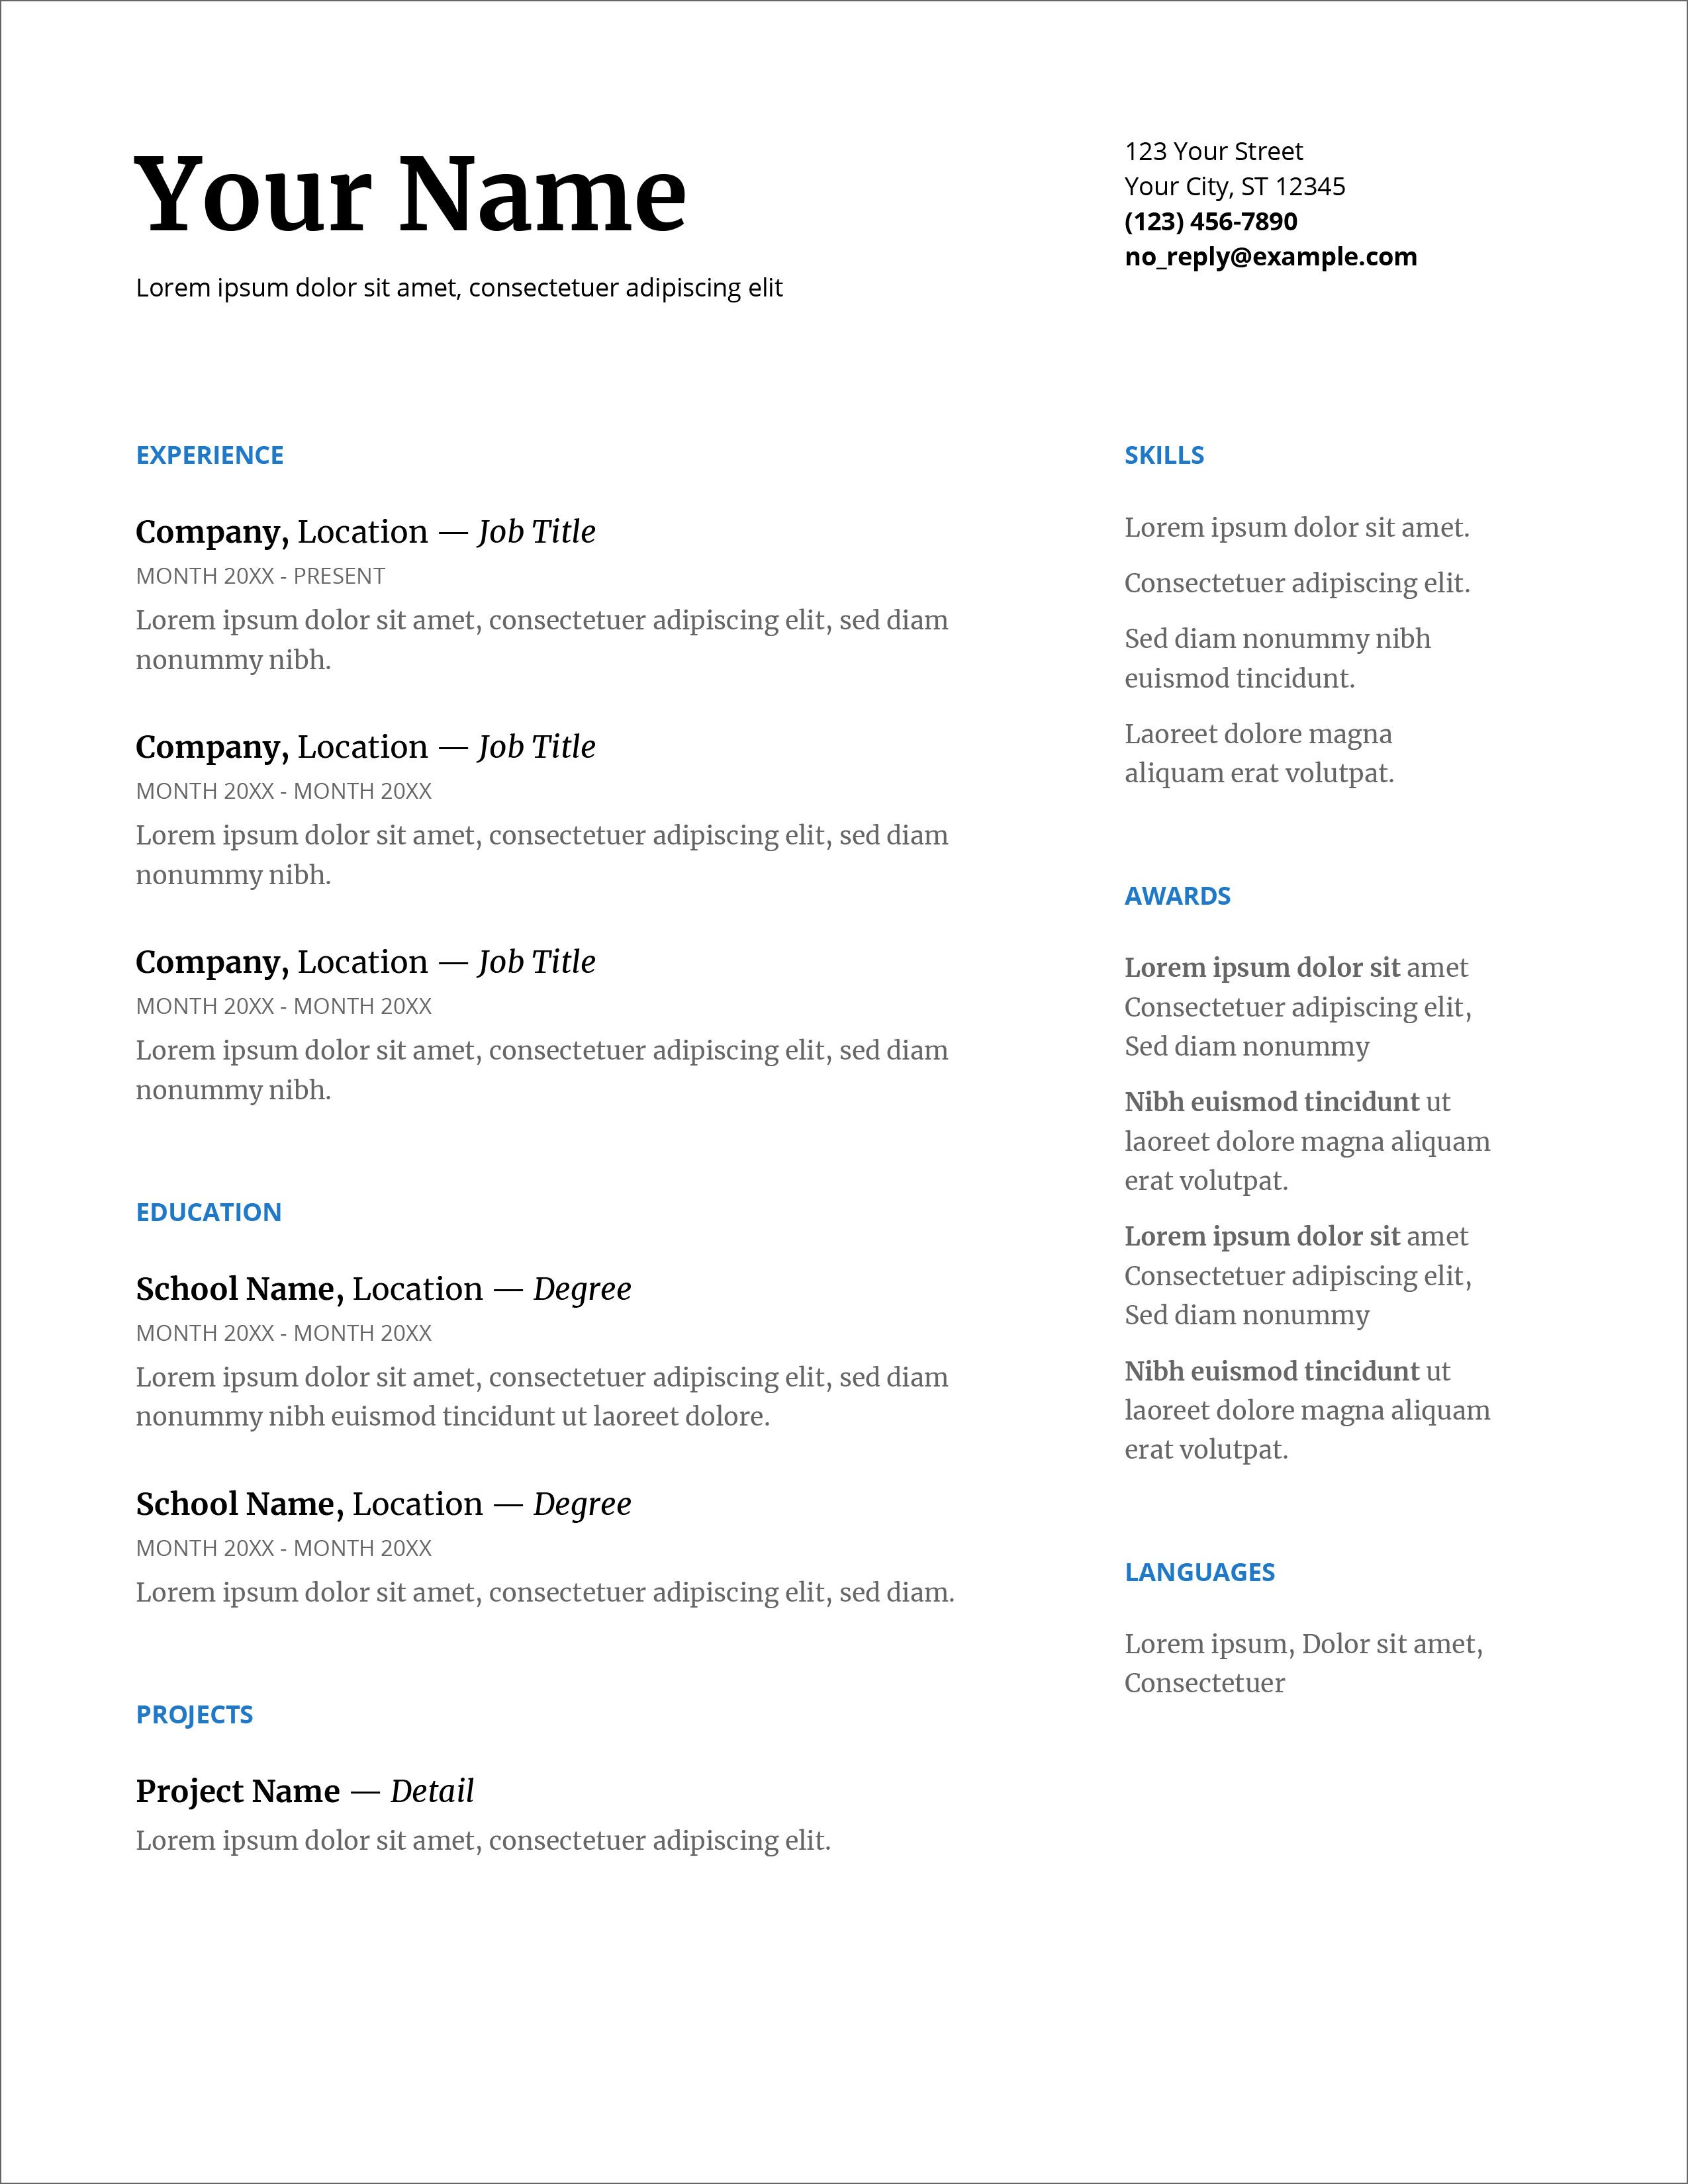 45 Free Modern Resume / CV Templates - Minimalist, Simple ...